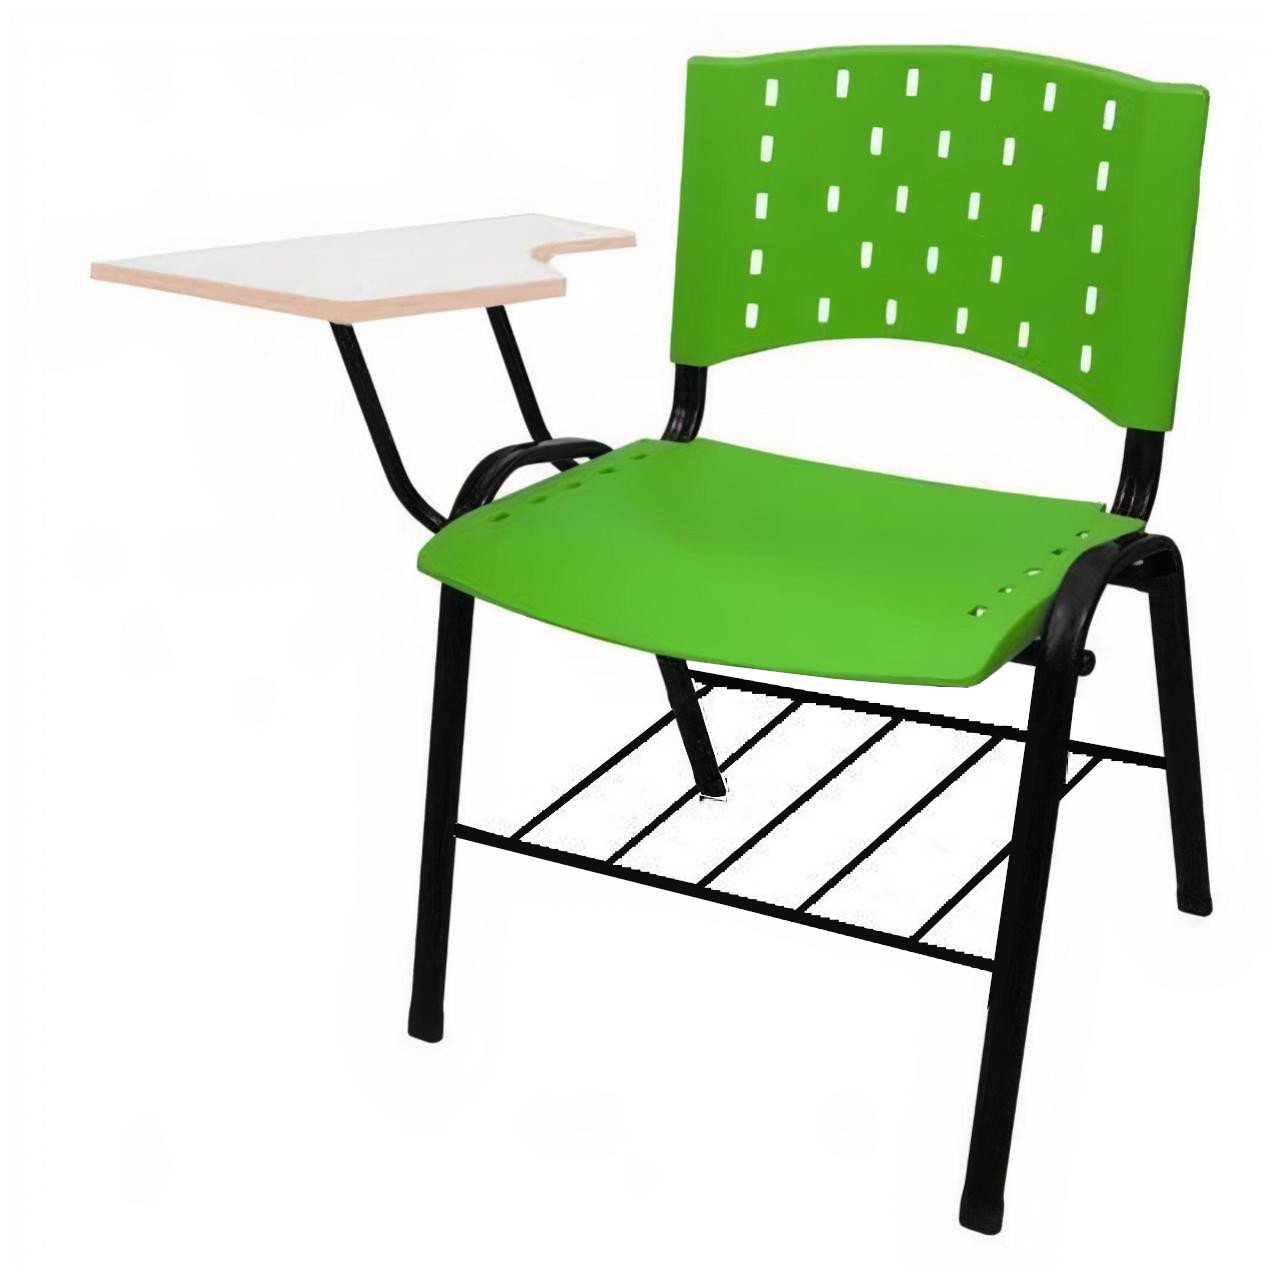 KIT 10 Cadeiras Universitárias com Prancheta e Porta Livros - Cor Verde - REAPLAST - 32027 - 3